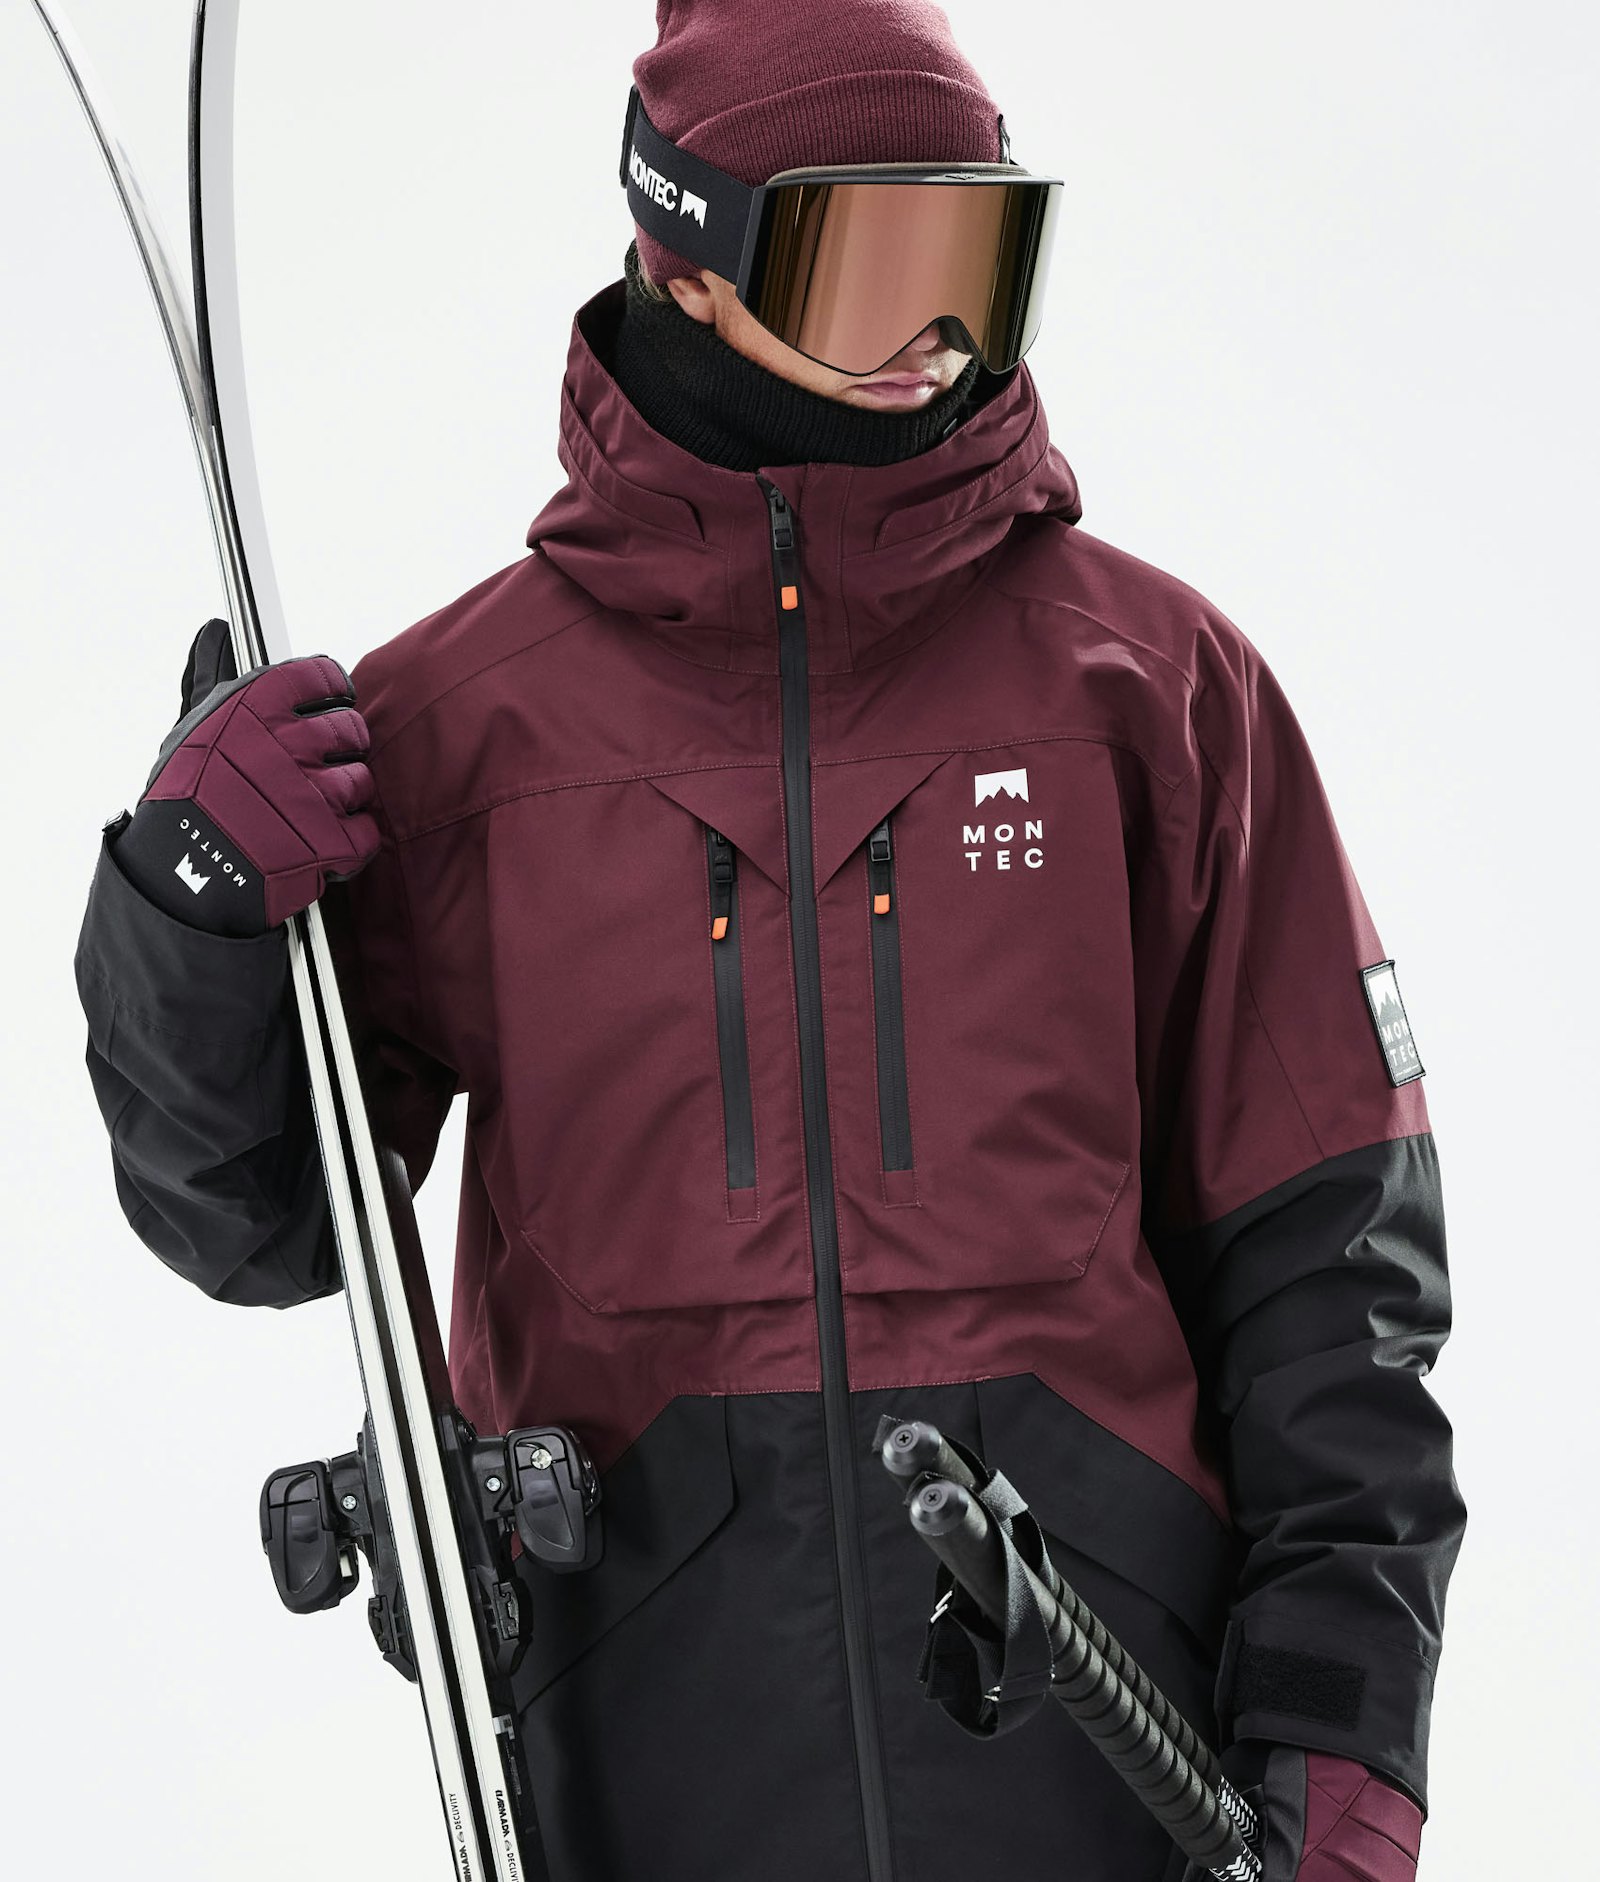 Moss 2021 Skijakke Herre Burgundy/Black